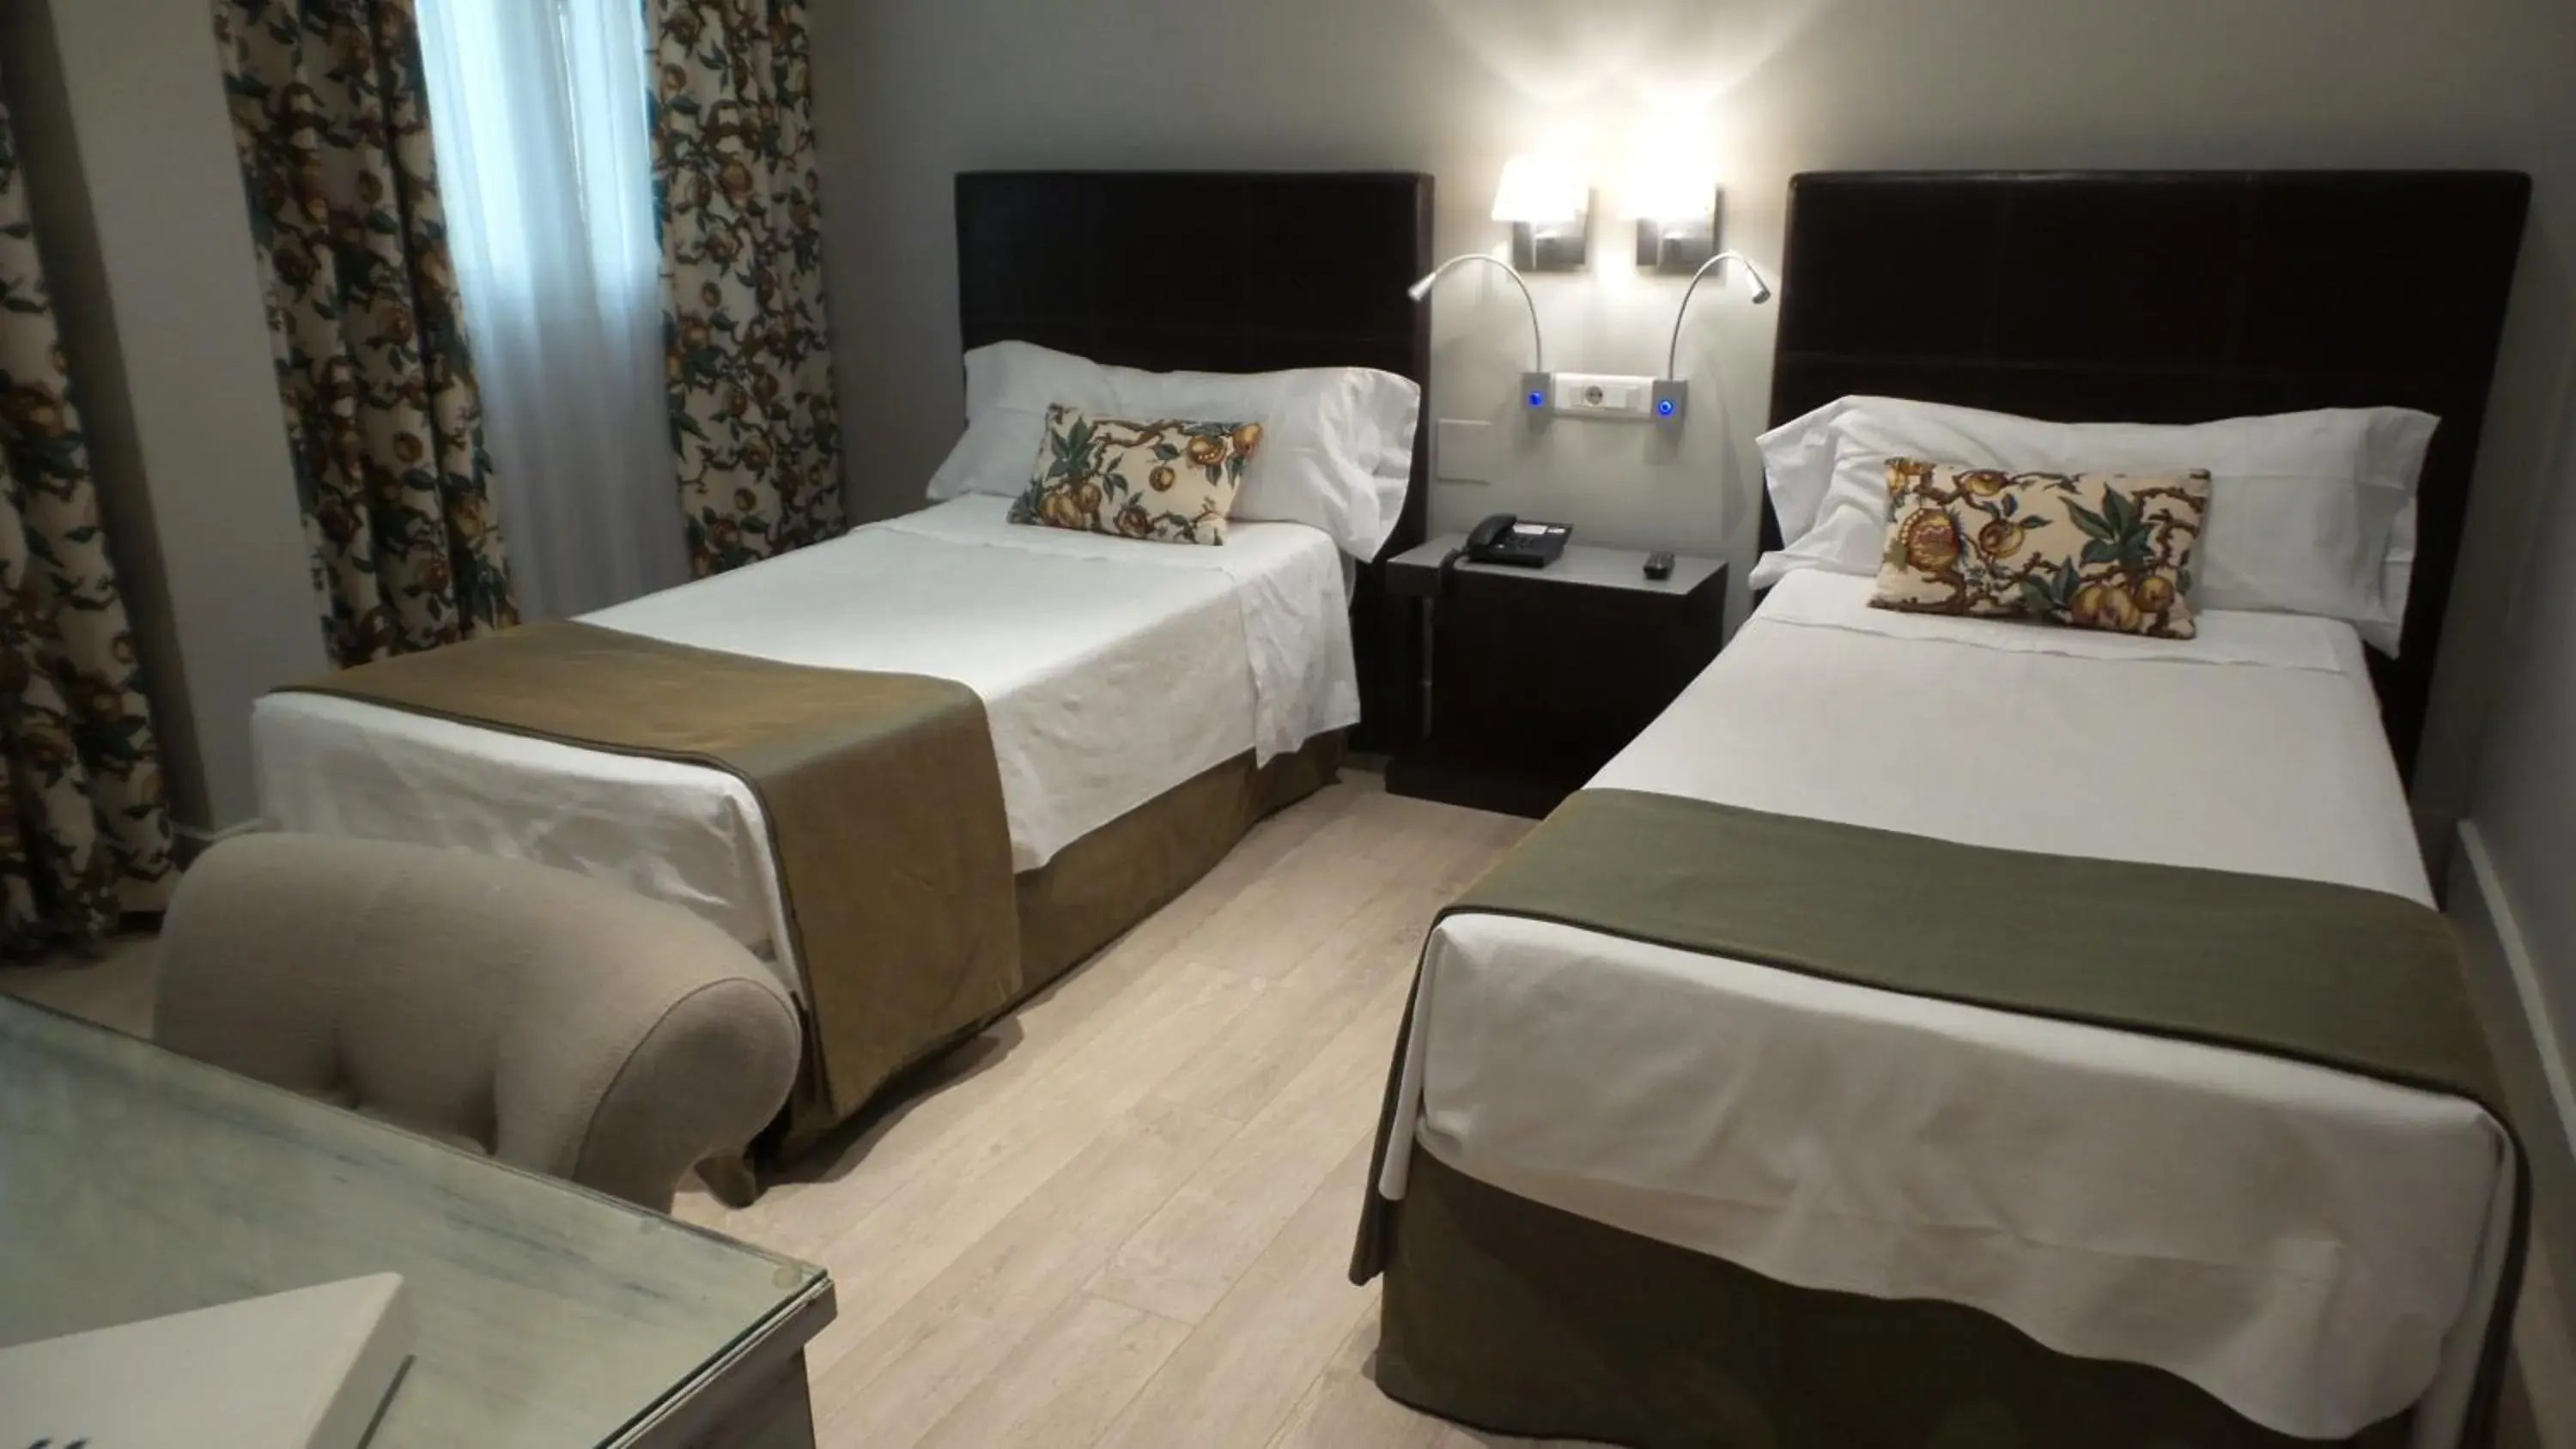 Bedroom, Room Photo in Hotel Moderno Puerta del Sol